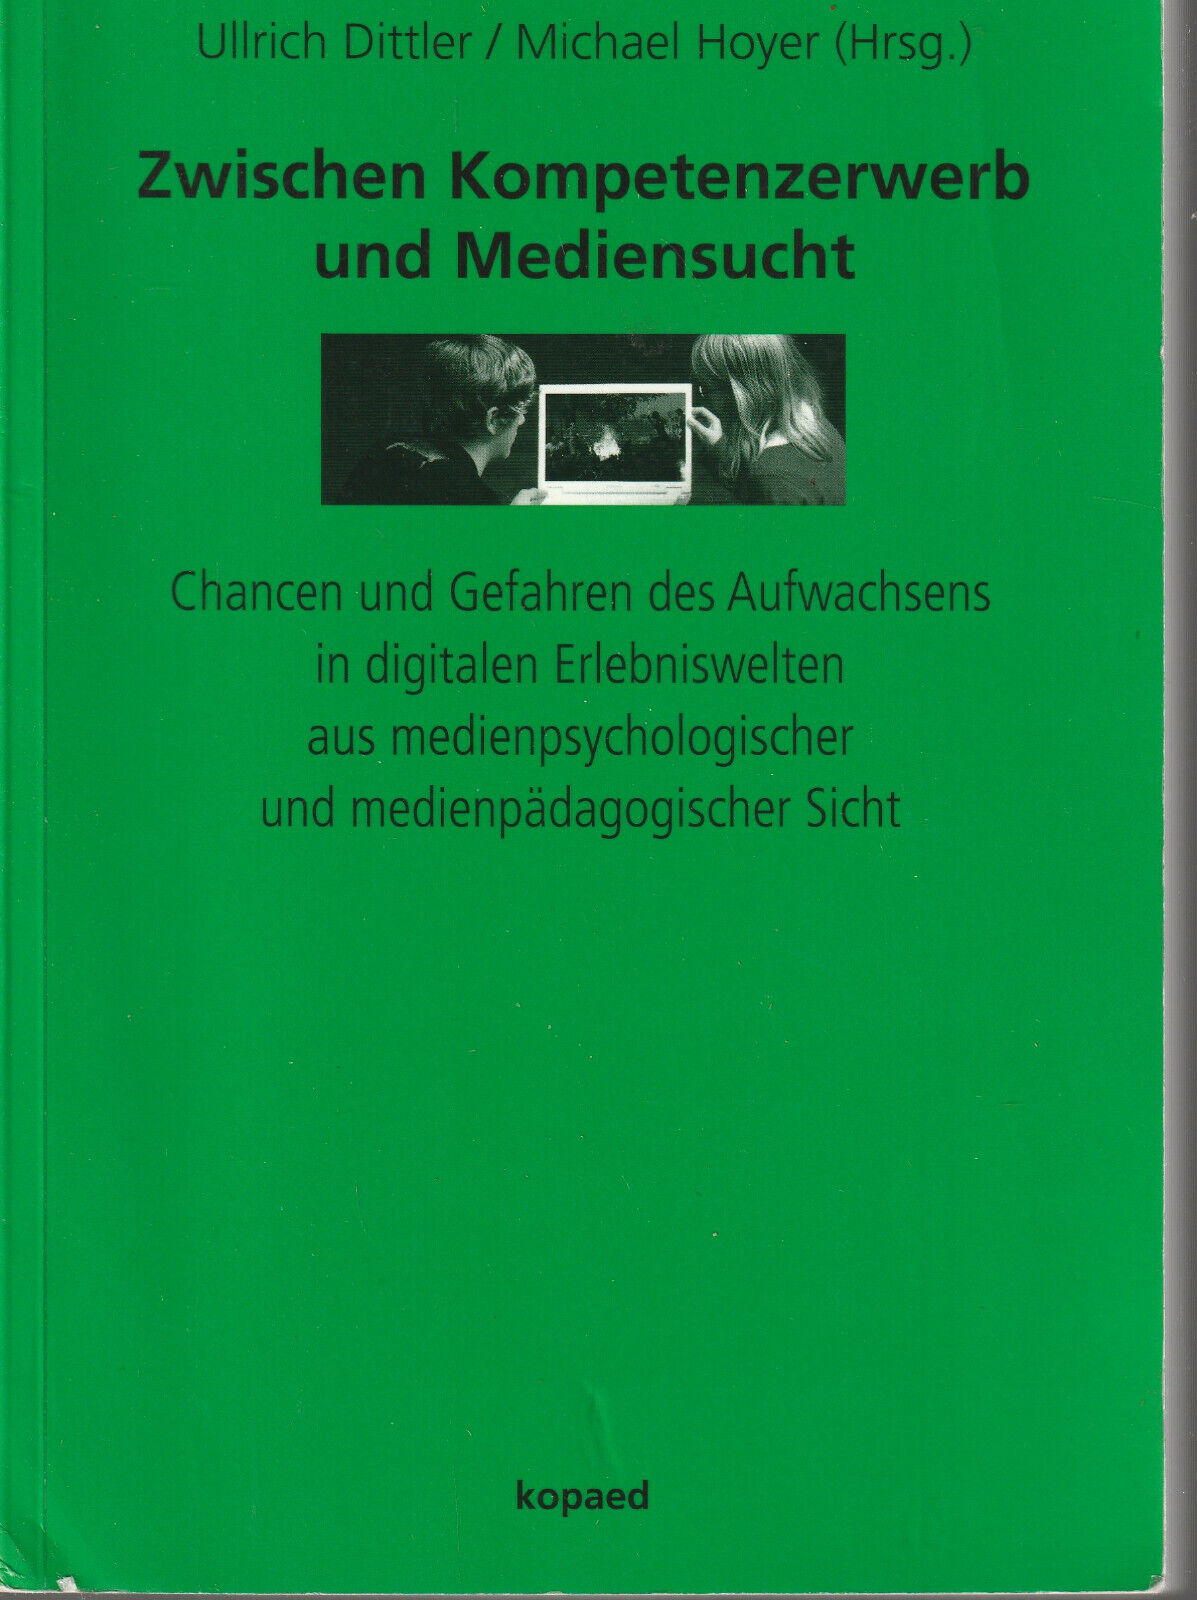 Ullrich Dittler / Michael Hoyer: Zwischen Kompetenzerwerb und Mediensucht - Ullrich Dittler / Michael Hoyer